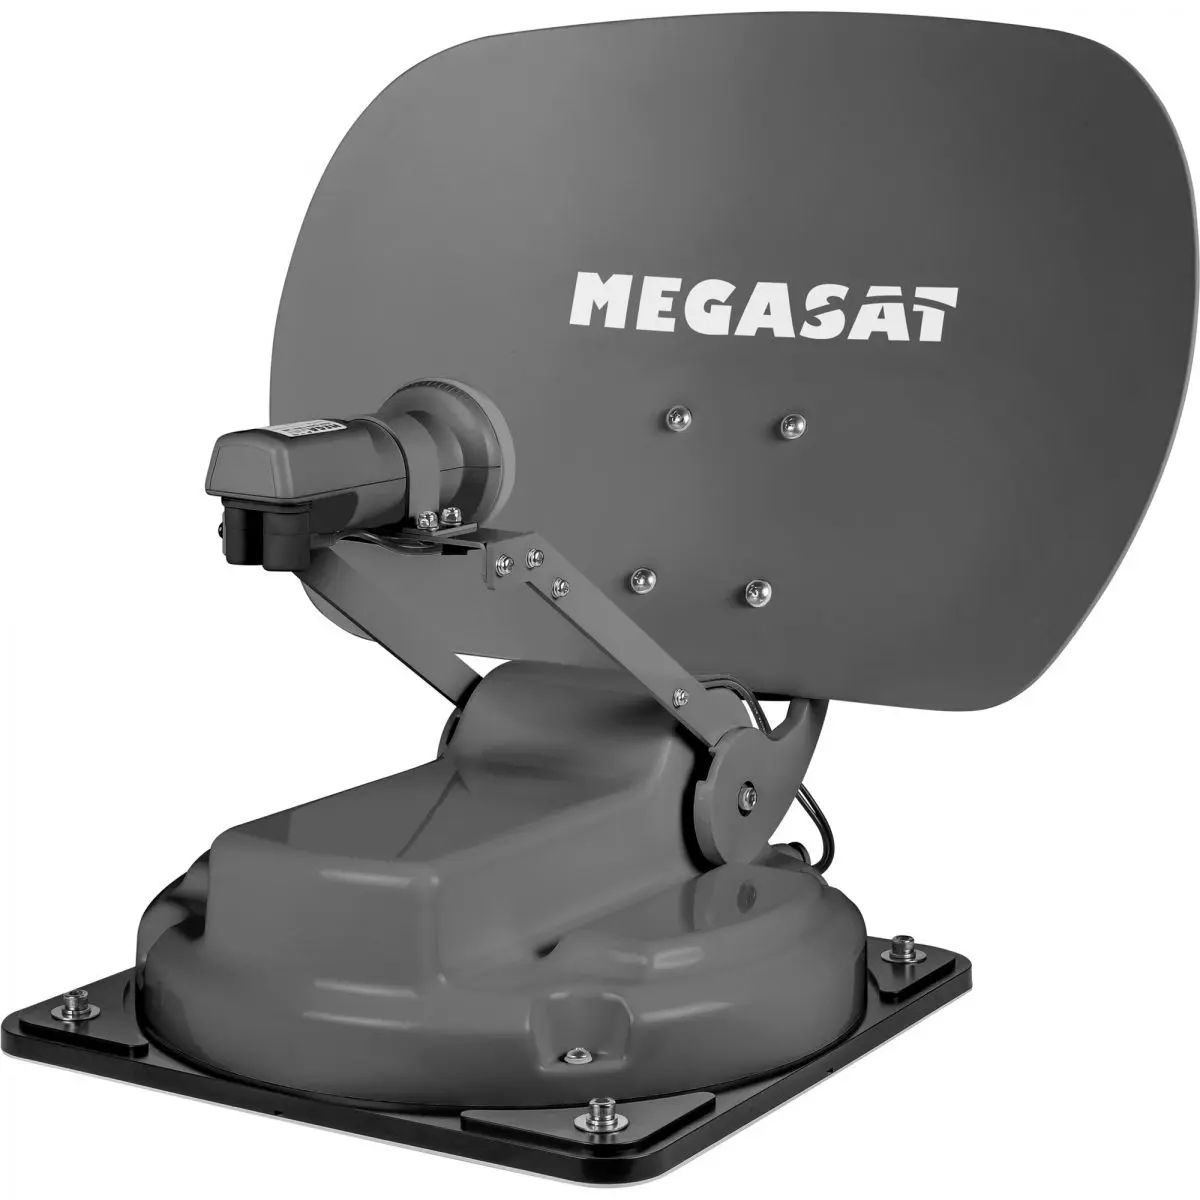 Sistem prin satelit Megasat Caravanman Compact 3, grafit